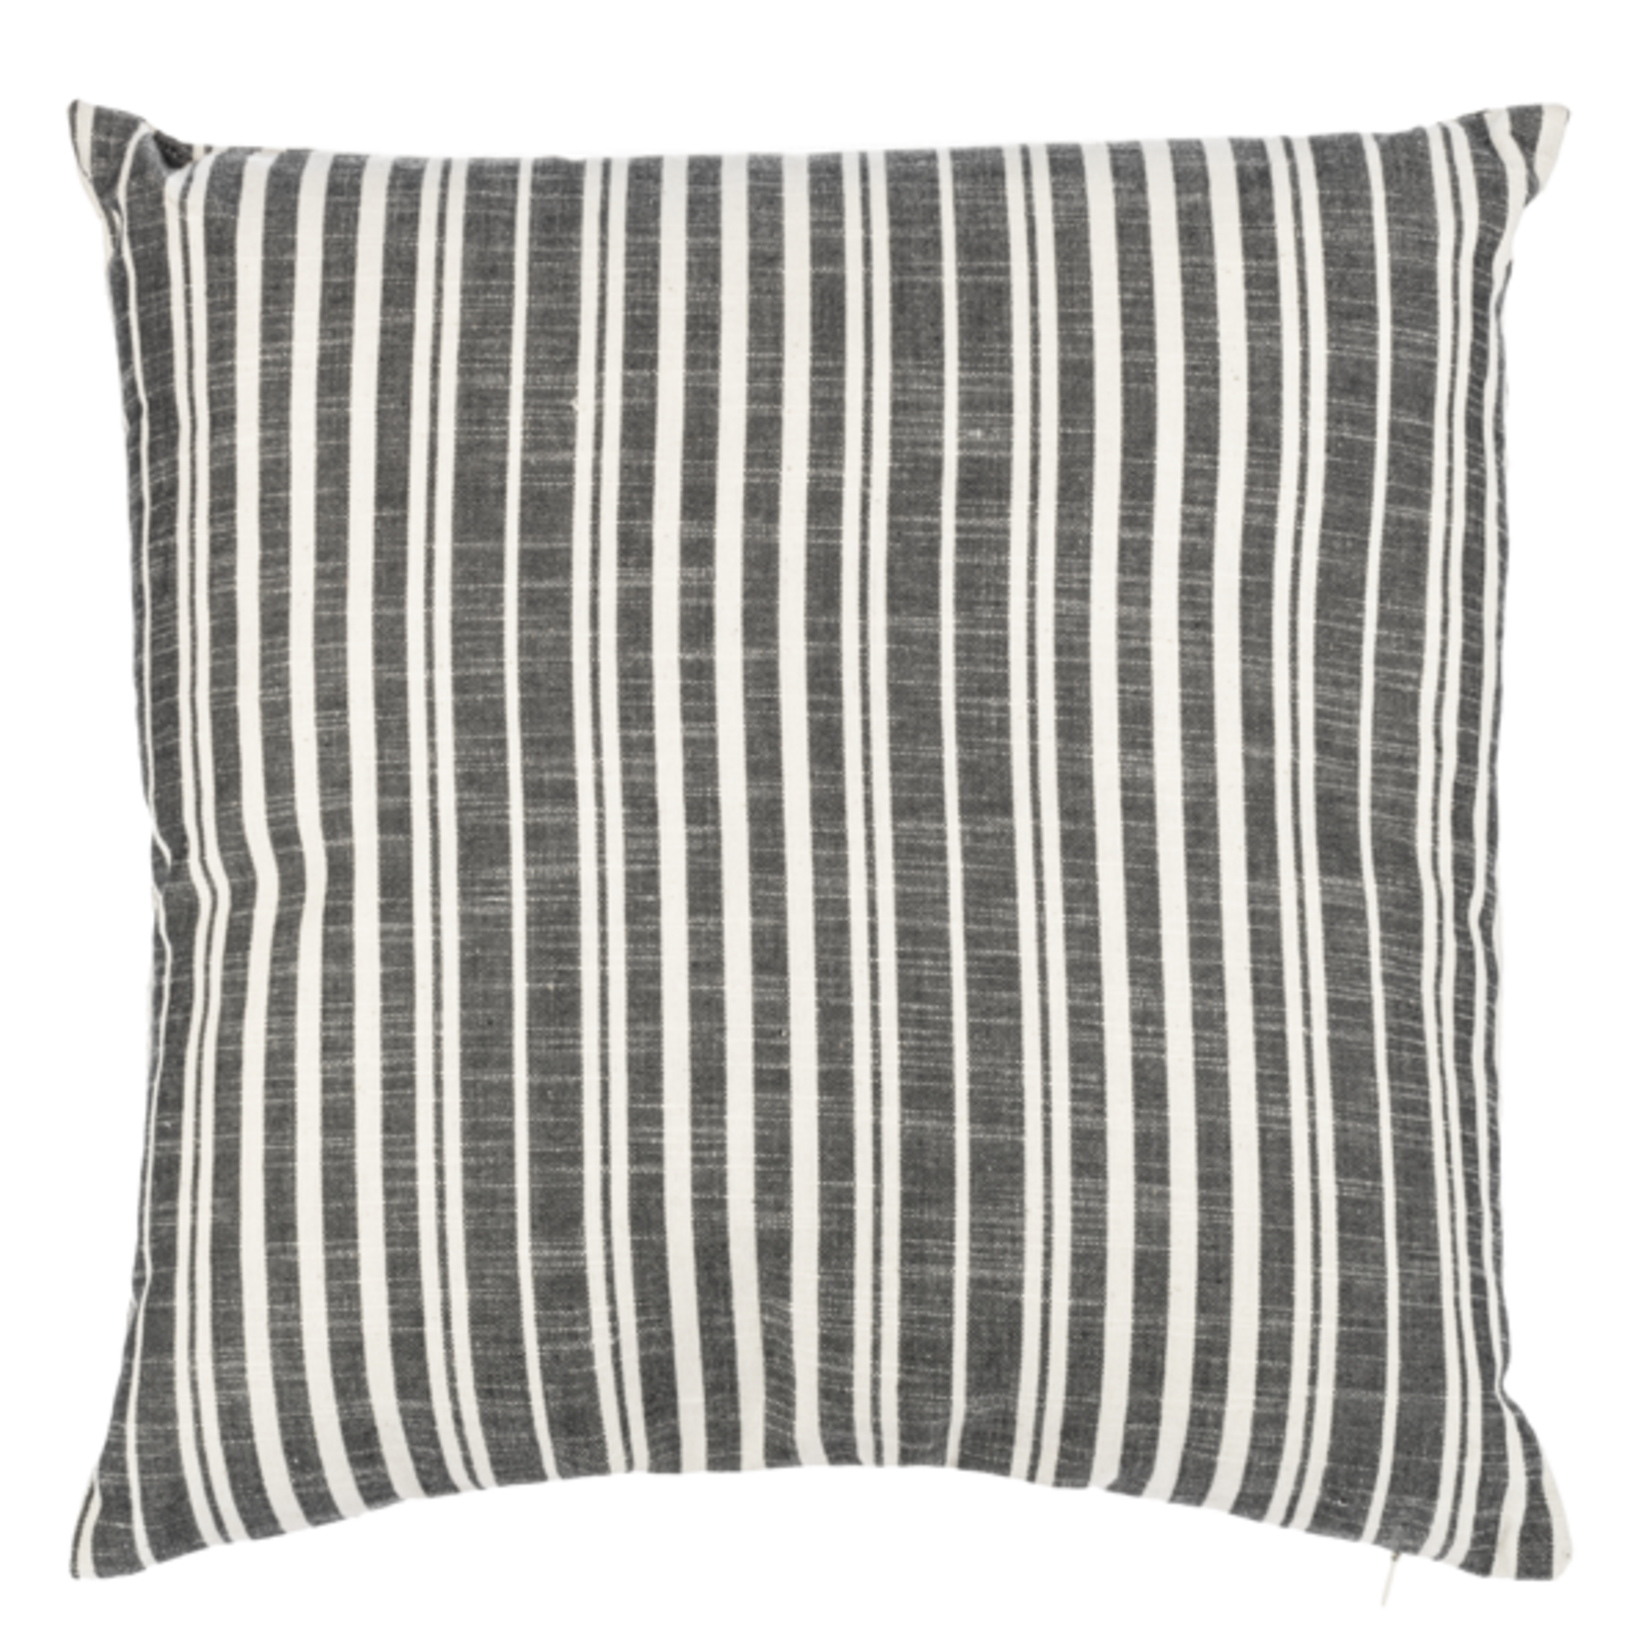 CBK Ganz Black Stripe Pillow - 18x18